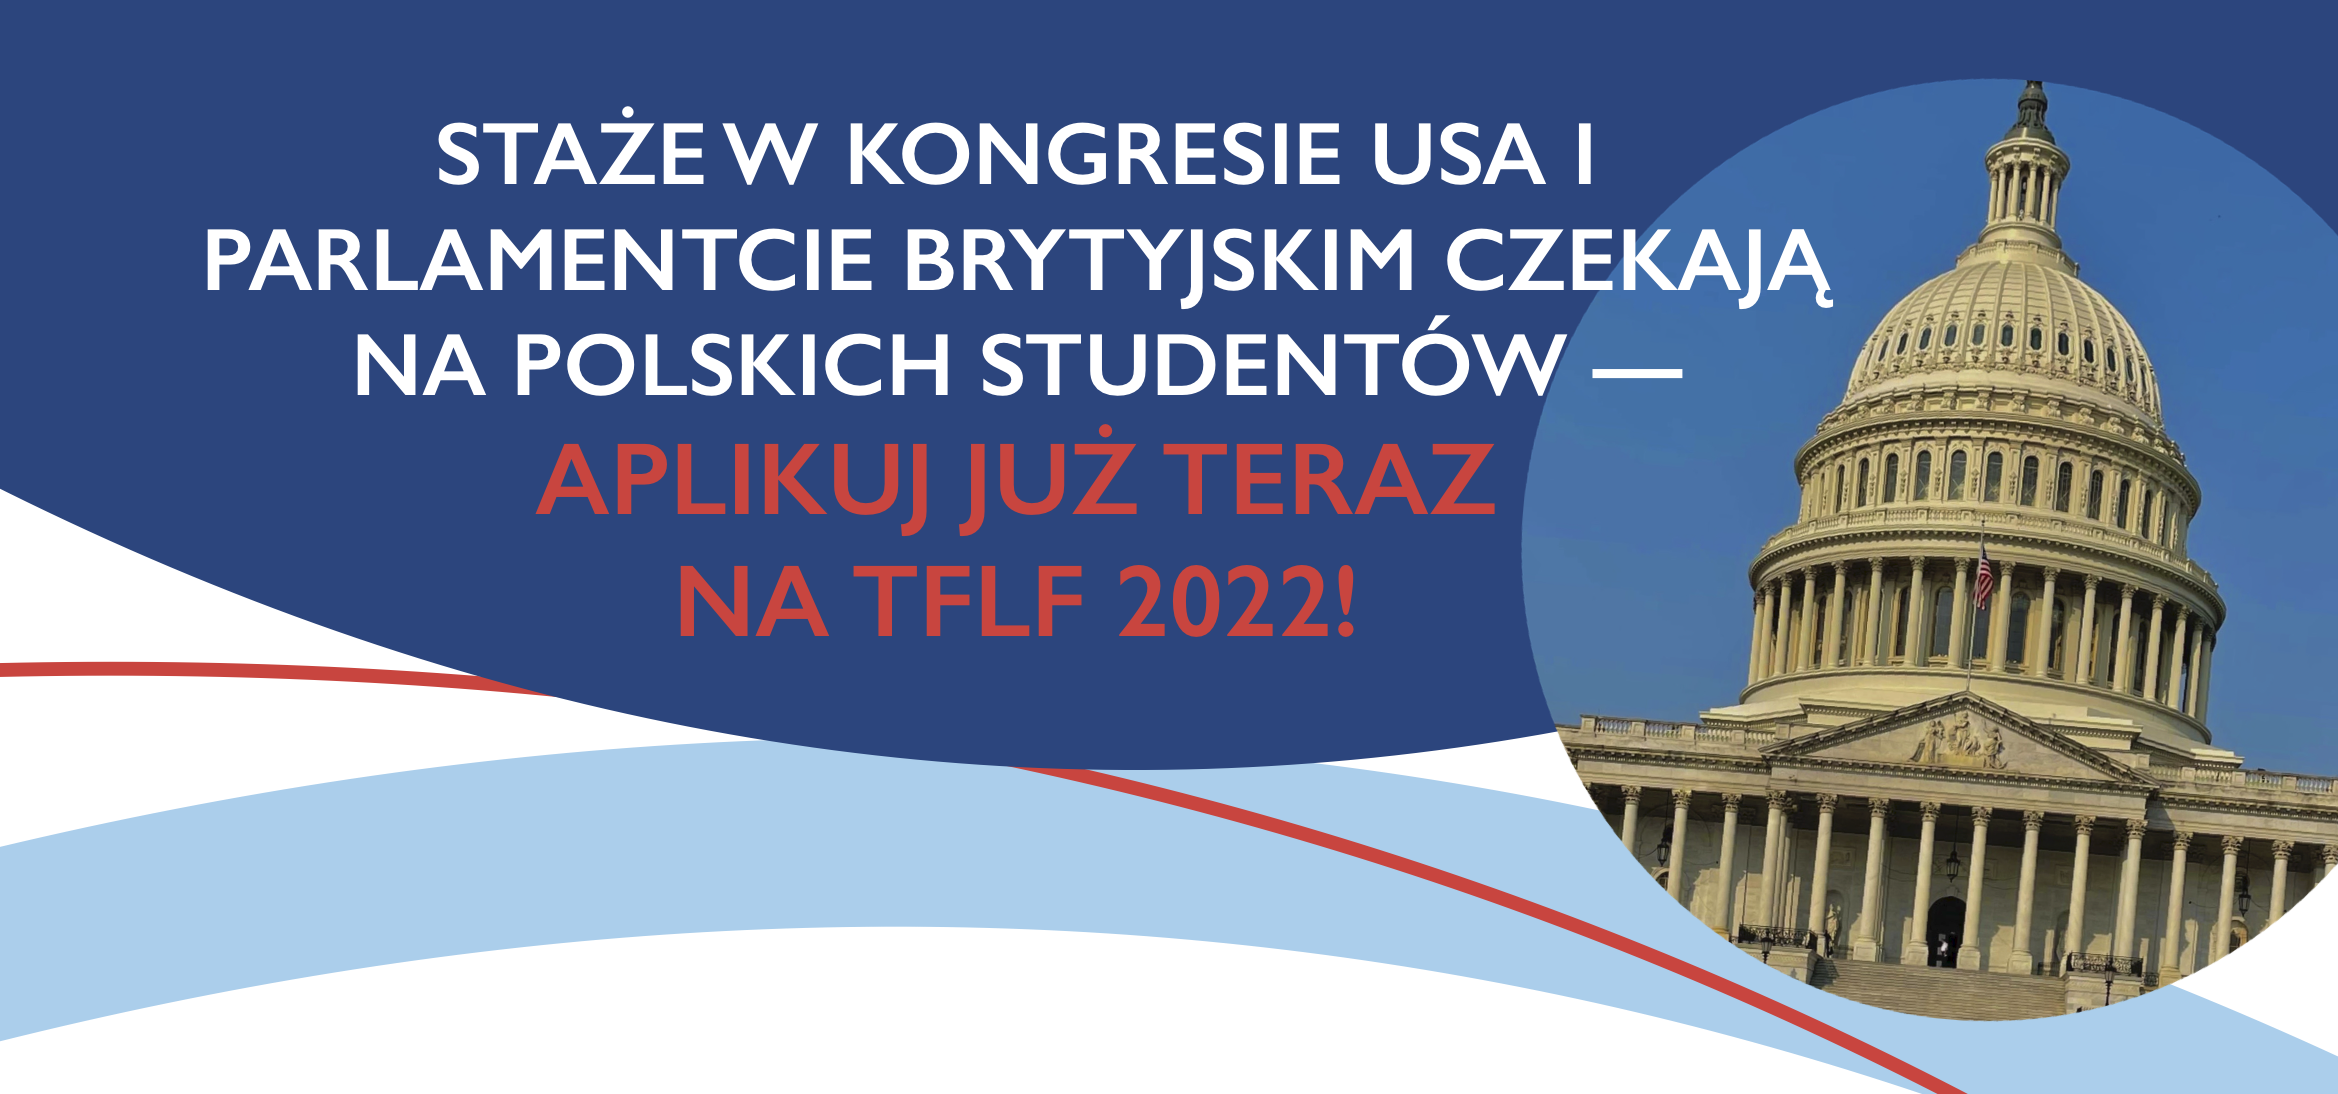 Rozpoczęła się rekrutacja do prestiżowego programu stażowego dla polskich studentów – Transatlantic Future Leaders Forum! 